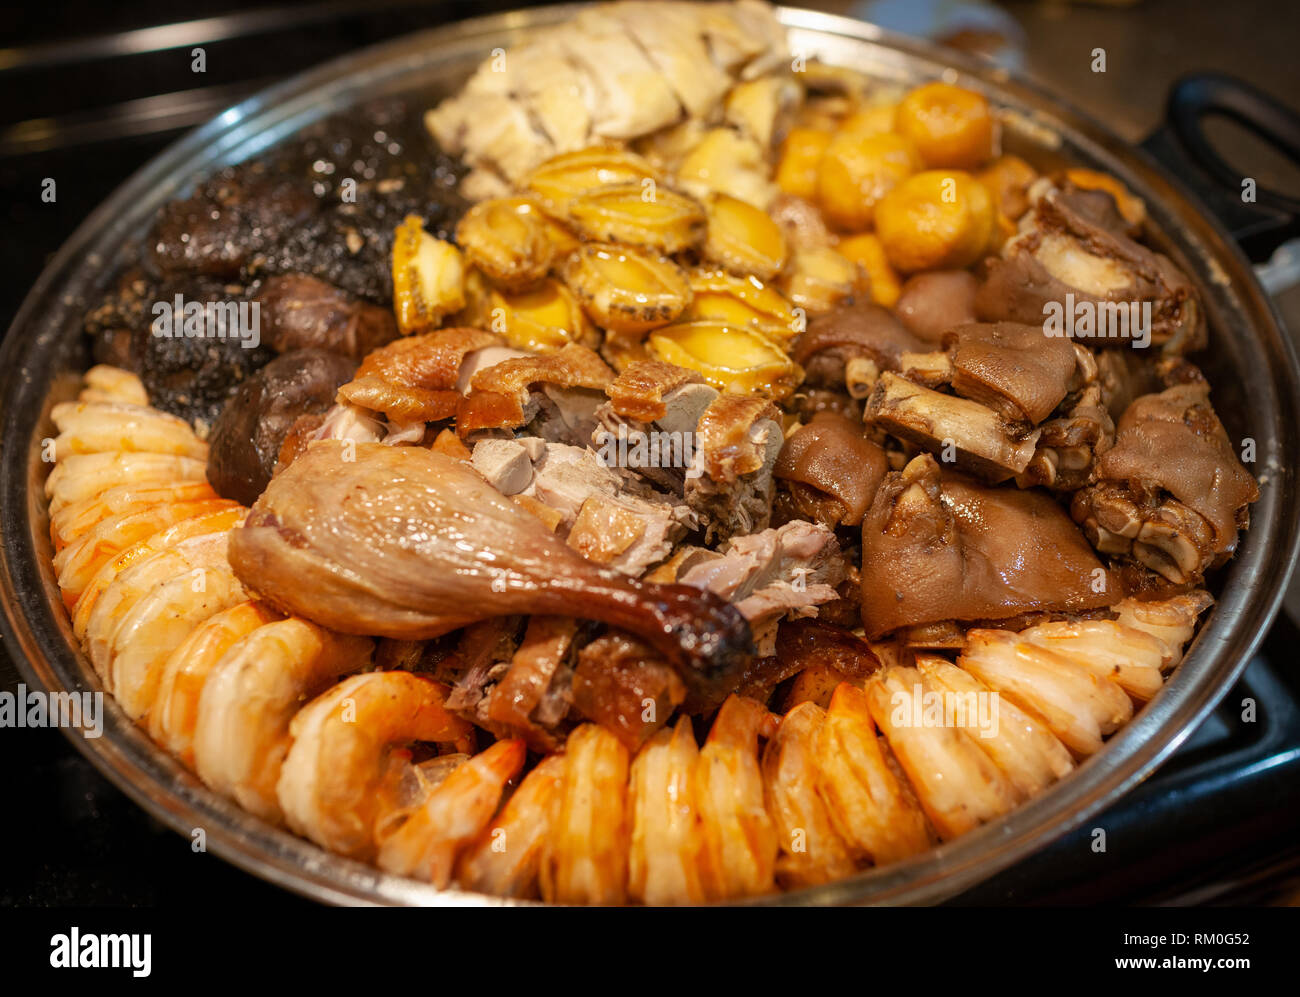 Une cuisine traditionnelle nouvelle année chinoise connue sous le nom de Poon Choi, traduit littéralement comme grand bol, fête de la cuisine du bassin ou chinois en casserole. Originaire de député Banque D'Images